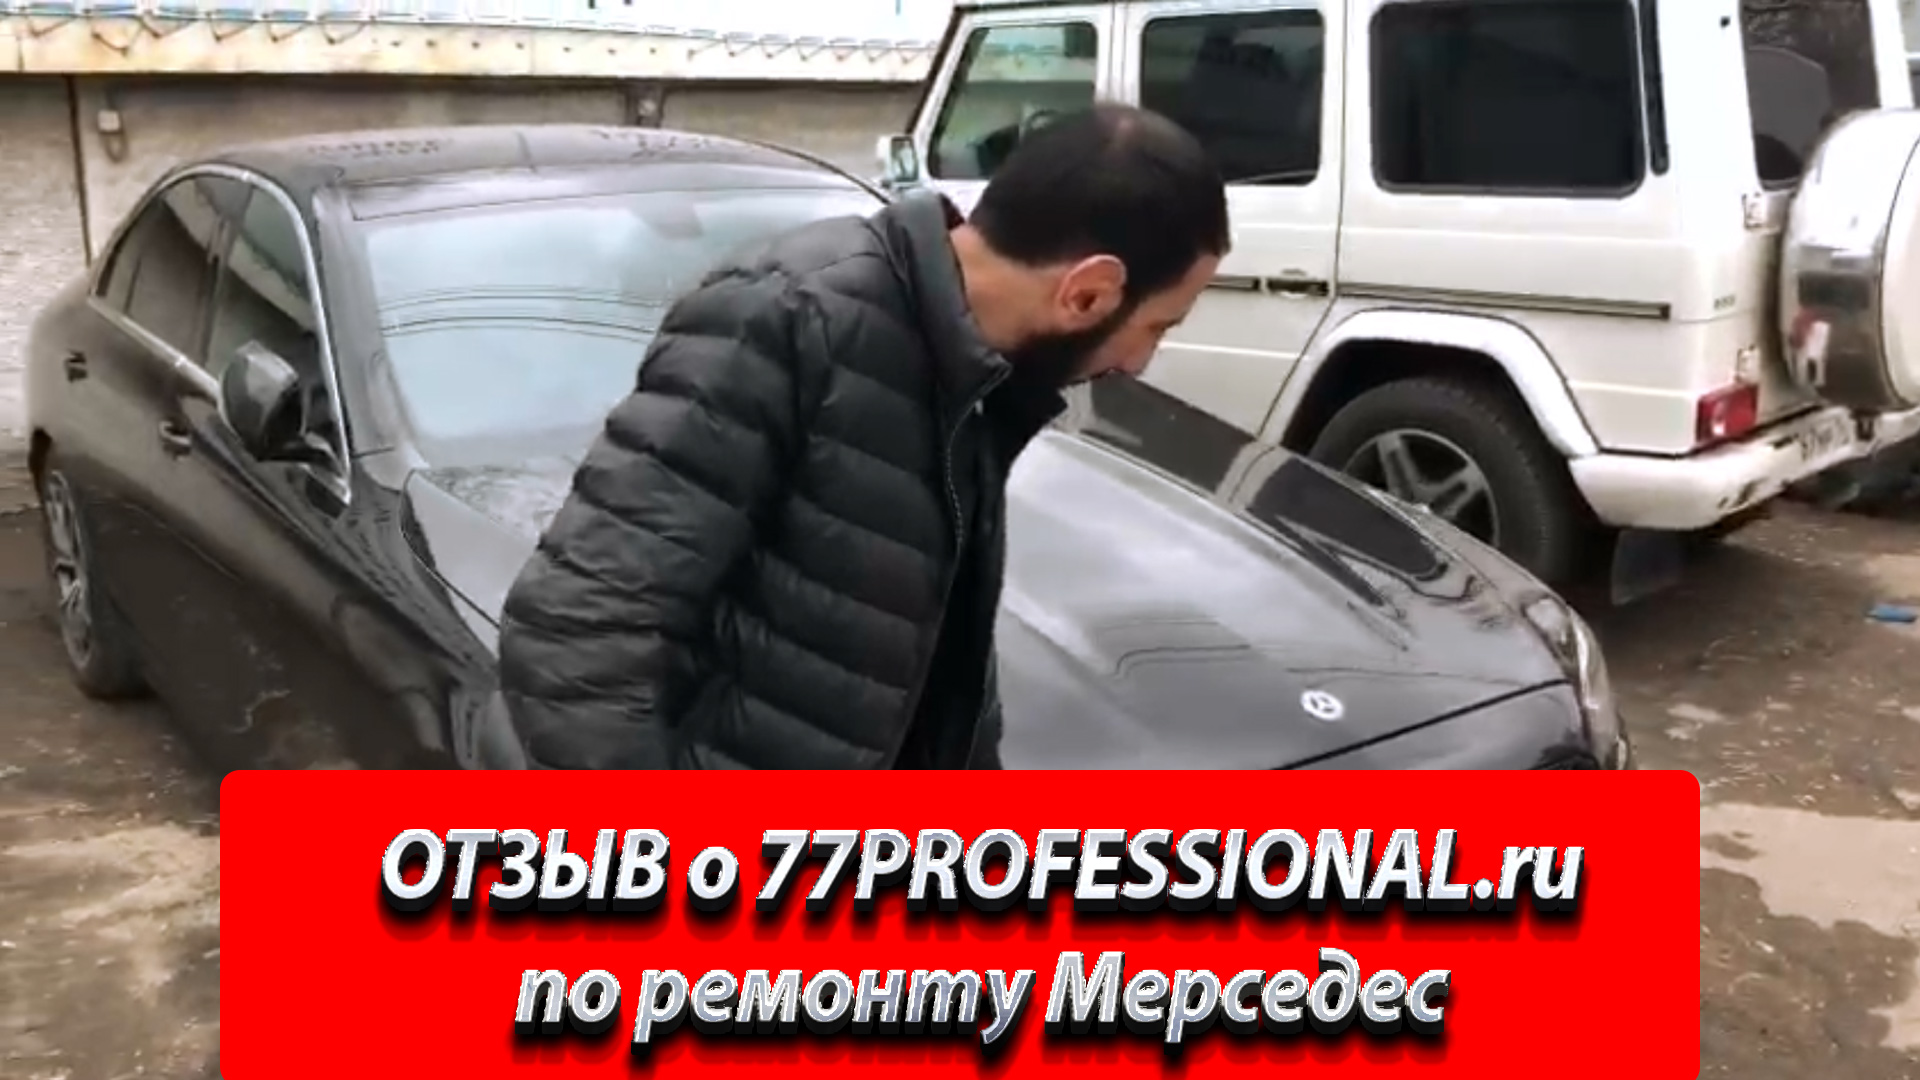 ОТЗЫВ о 77PROFESSIONAL.ru. Видео отзыв о 77Профессионал. Кузовной ремонт Мерседес